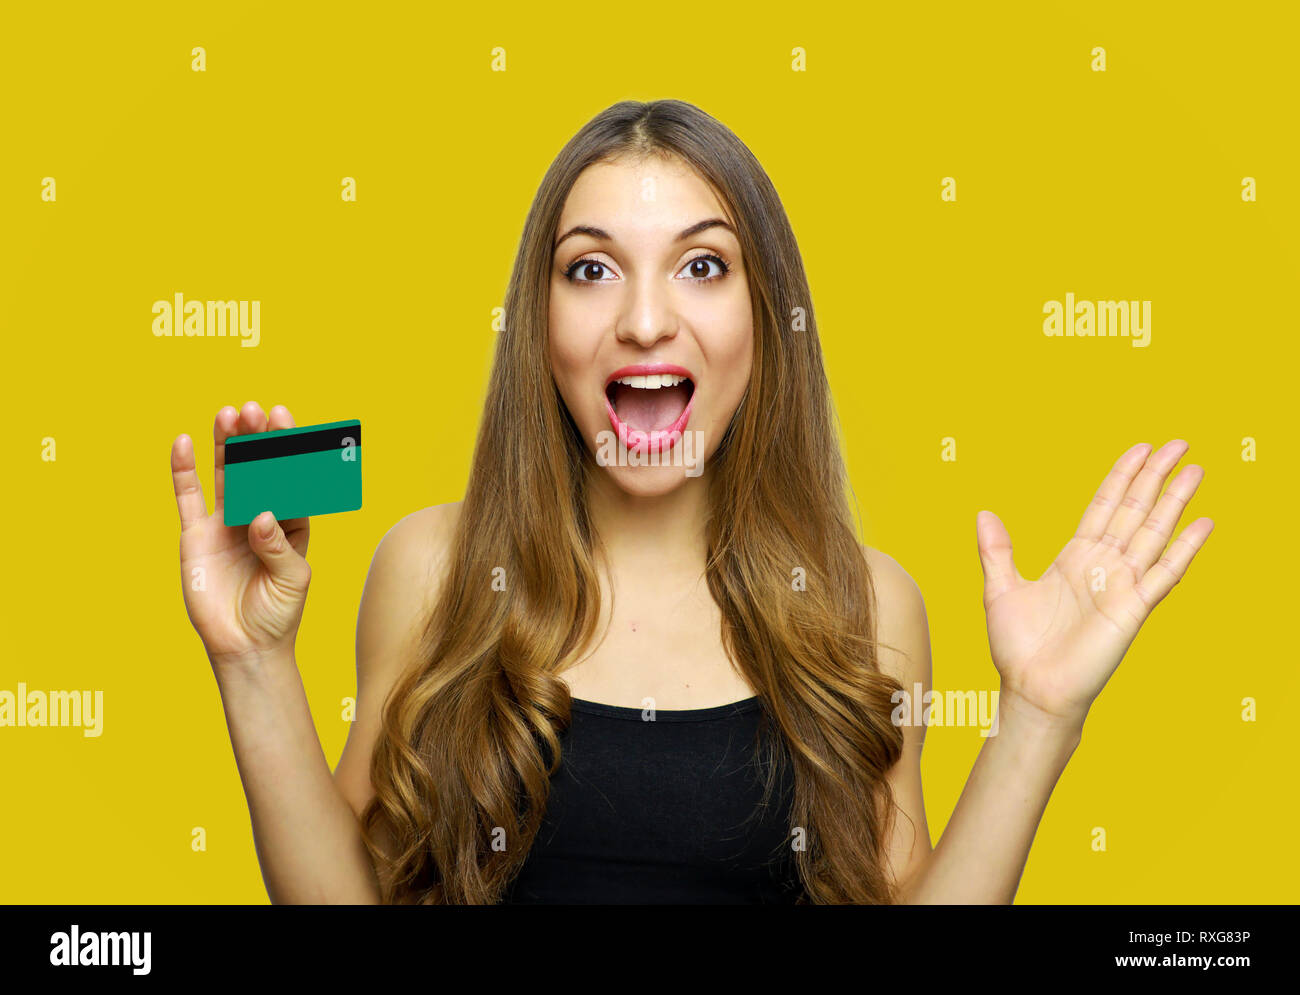 Heureux heureux surpris young woman holding credit card sur fond jaune Banque D'Images